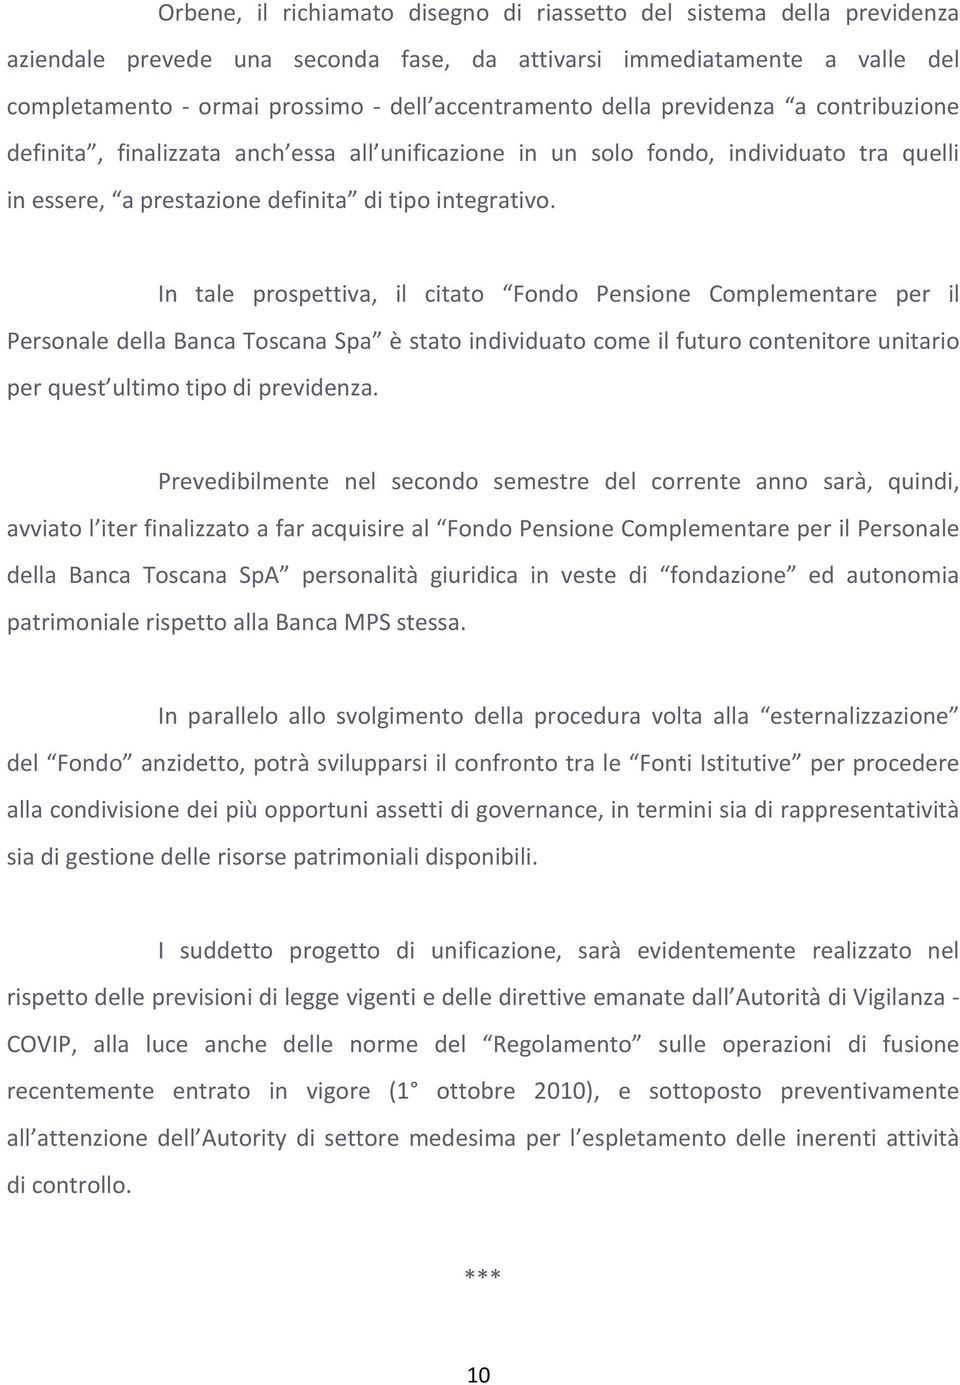 In tale prospettiva, il citato Fondo Pensione Complementare per il Personale della Banca Toscana Spa è stato individuato come il futuro contenitore unitario per quest ultimo tipo di previdenza.